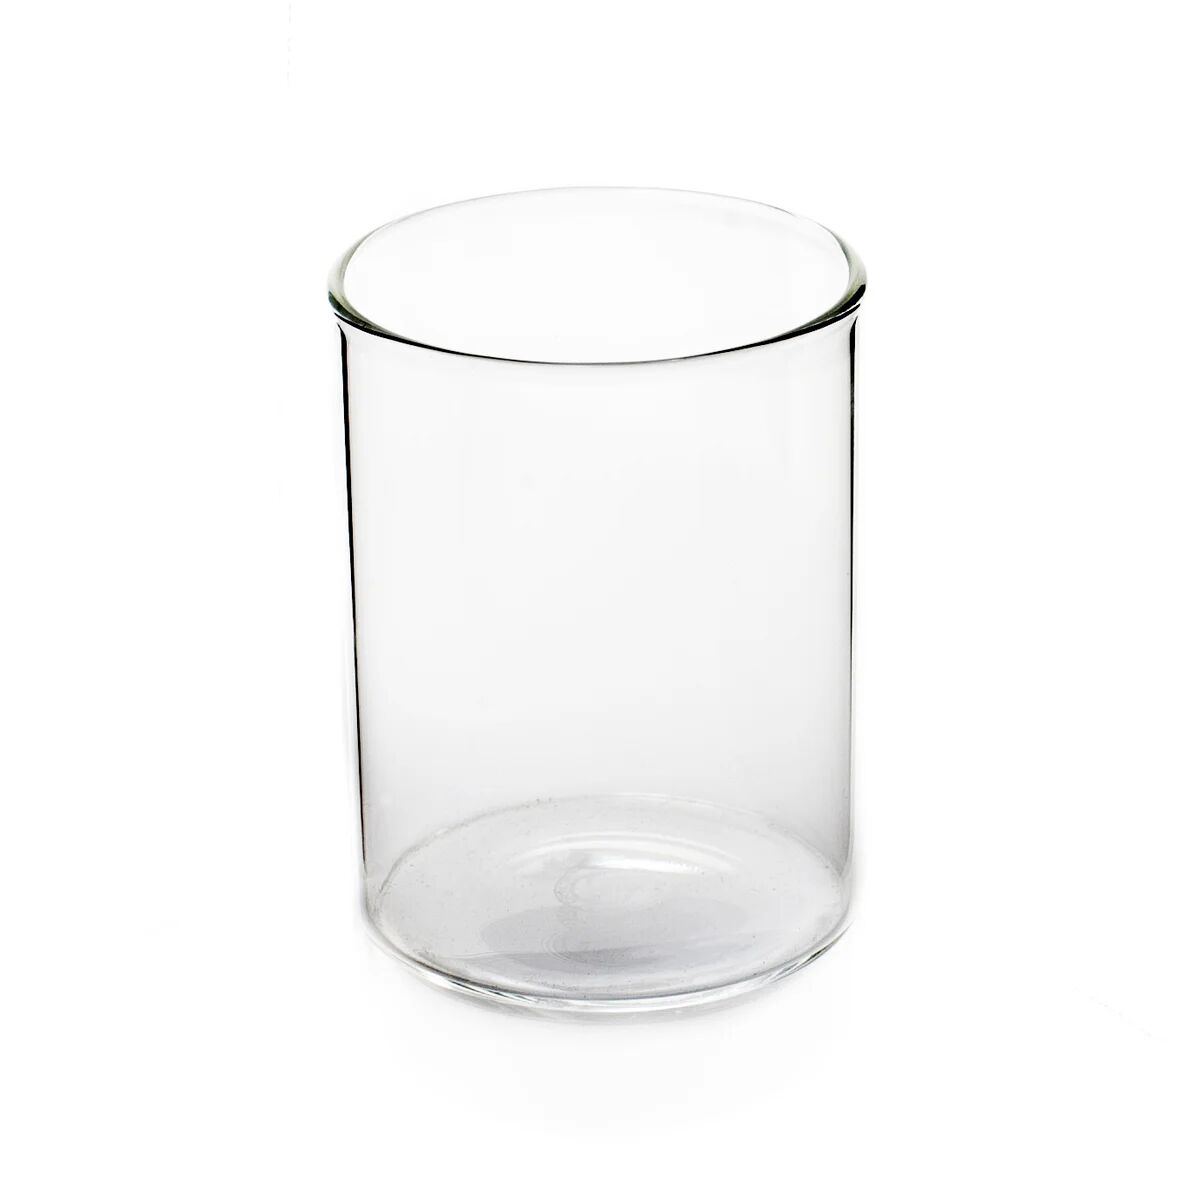 Ørskov glass X-small